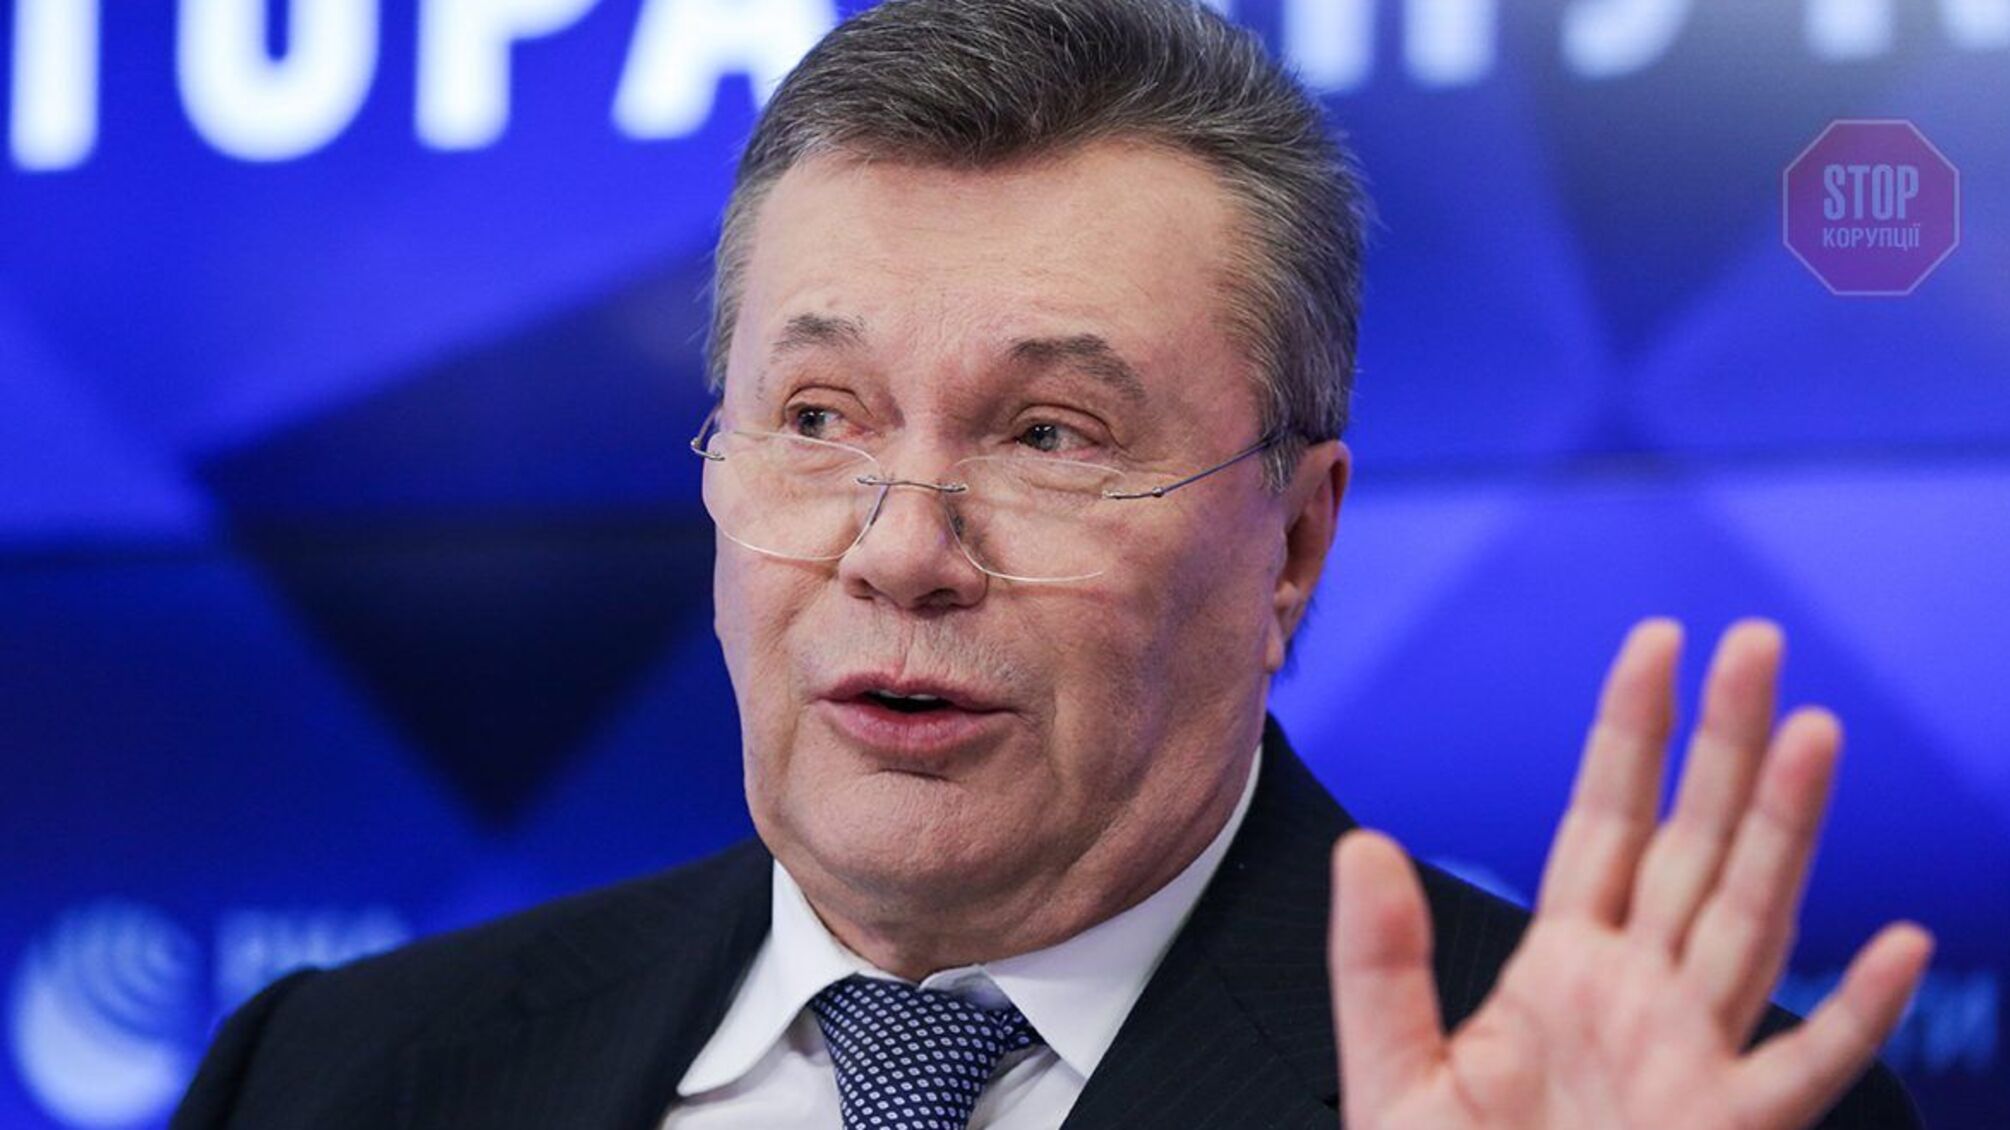 Янукович оскаржить своє усунення Верховною Радою у суді Києва